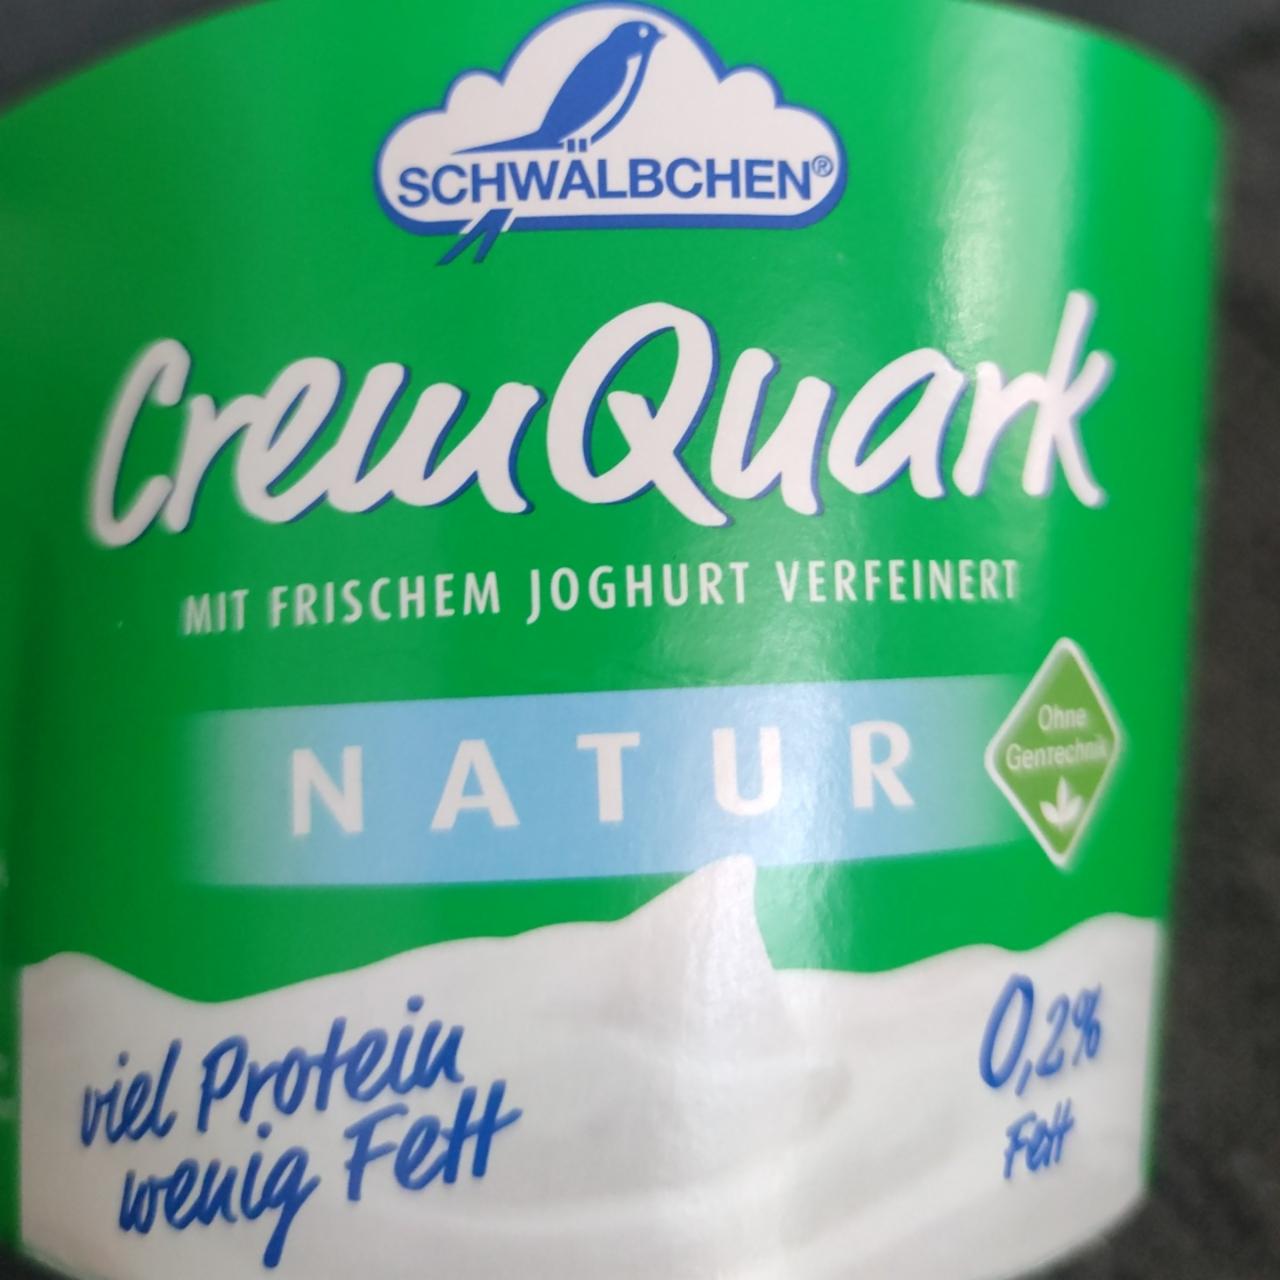 Fotografie - CremQuark Natur 0,2% Fett Schwälbchen